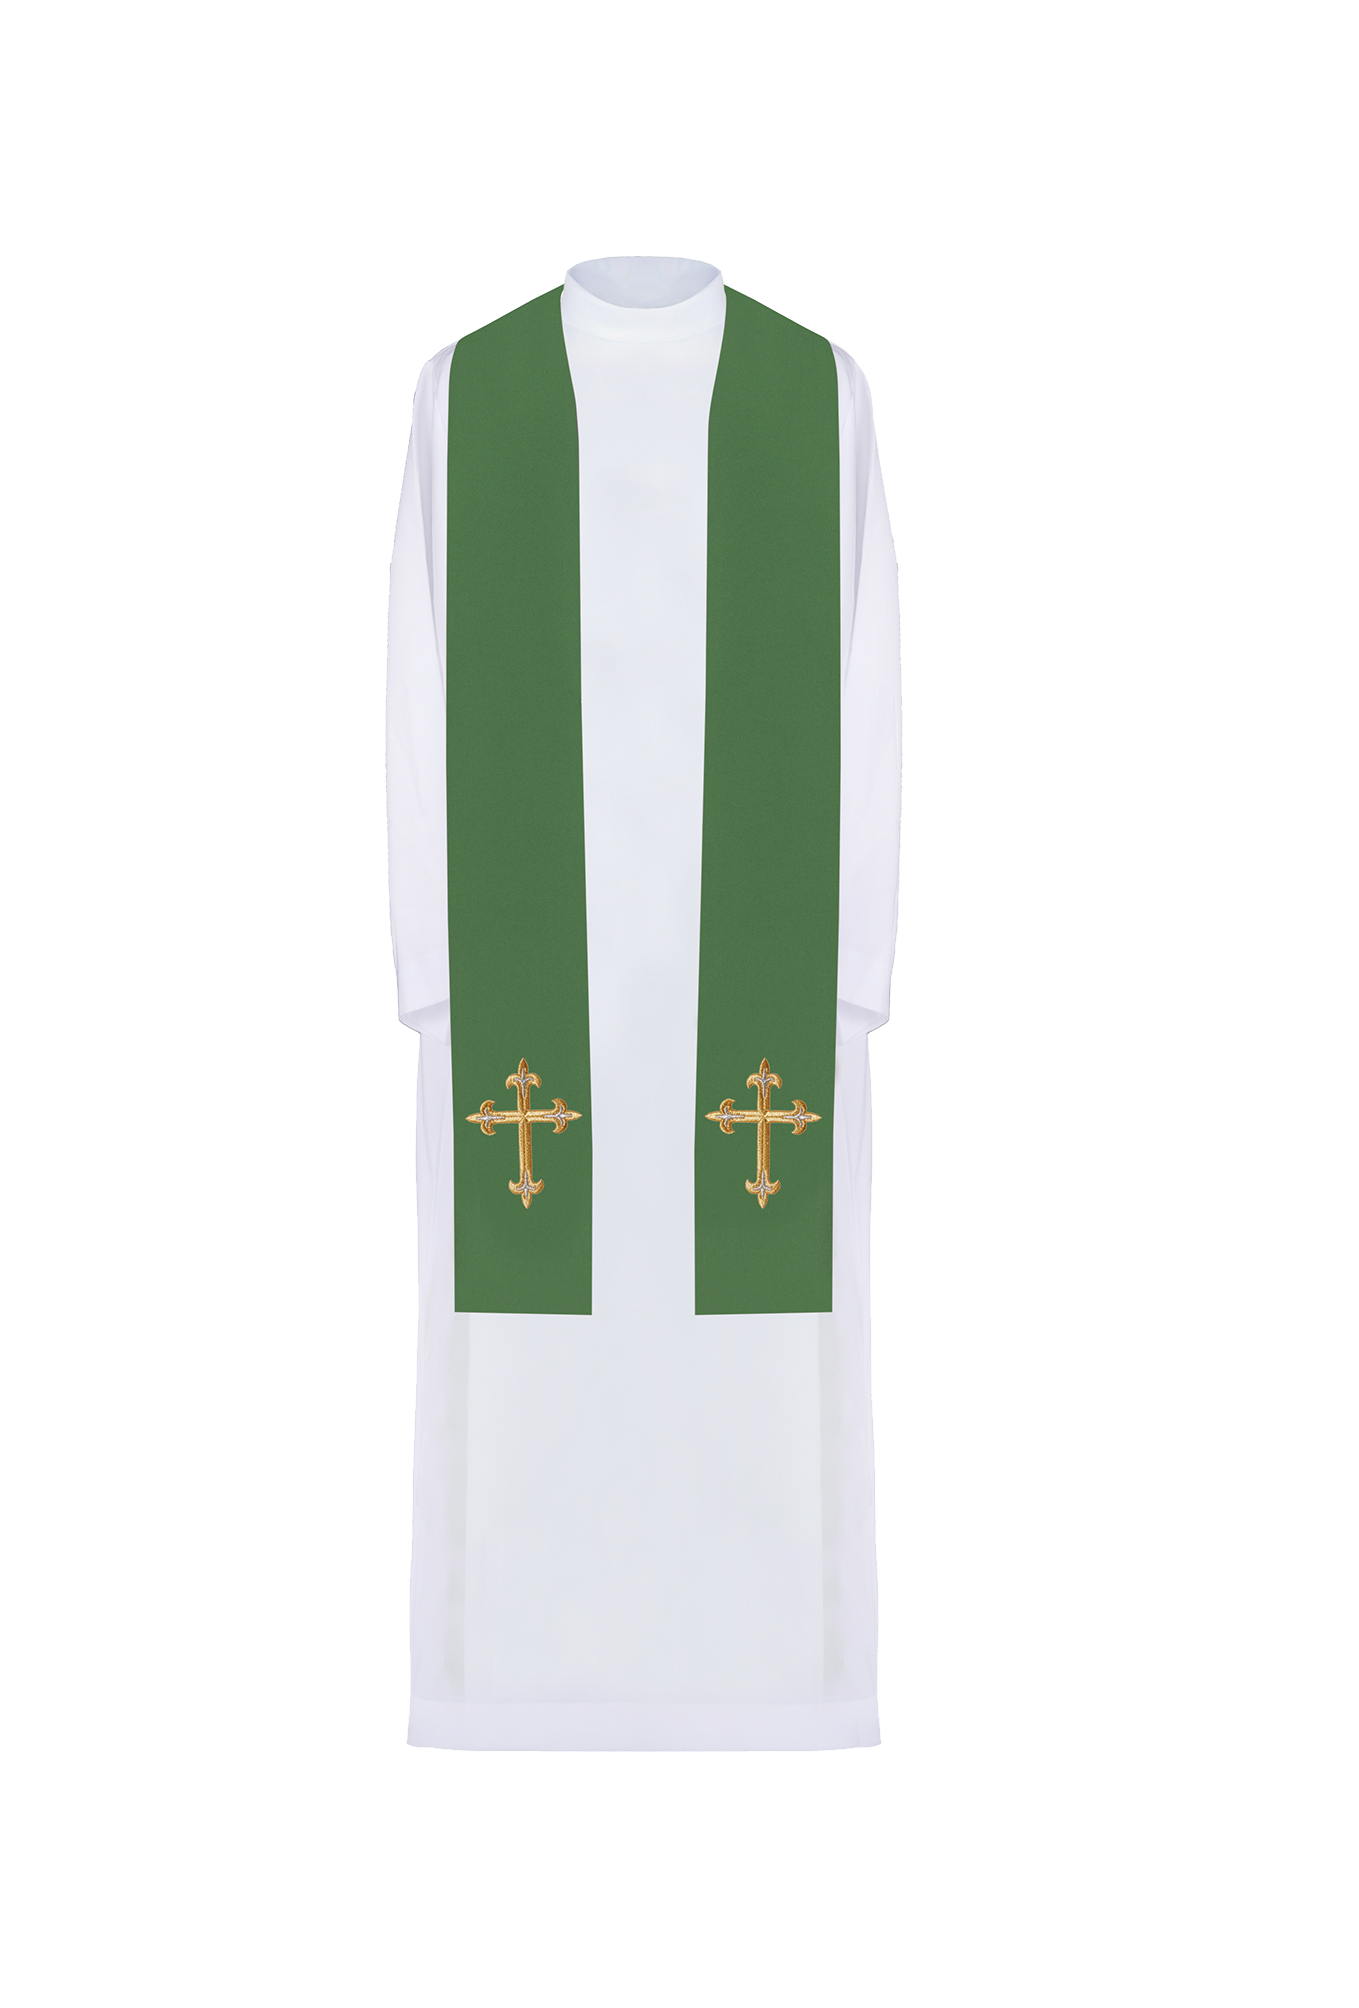 Stuła kapłańska haftowana Krzyż Zielona